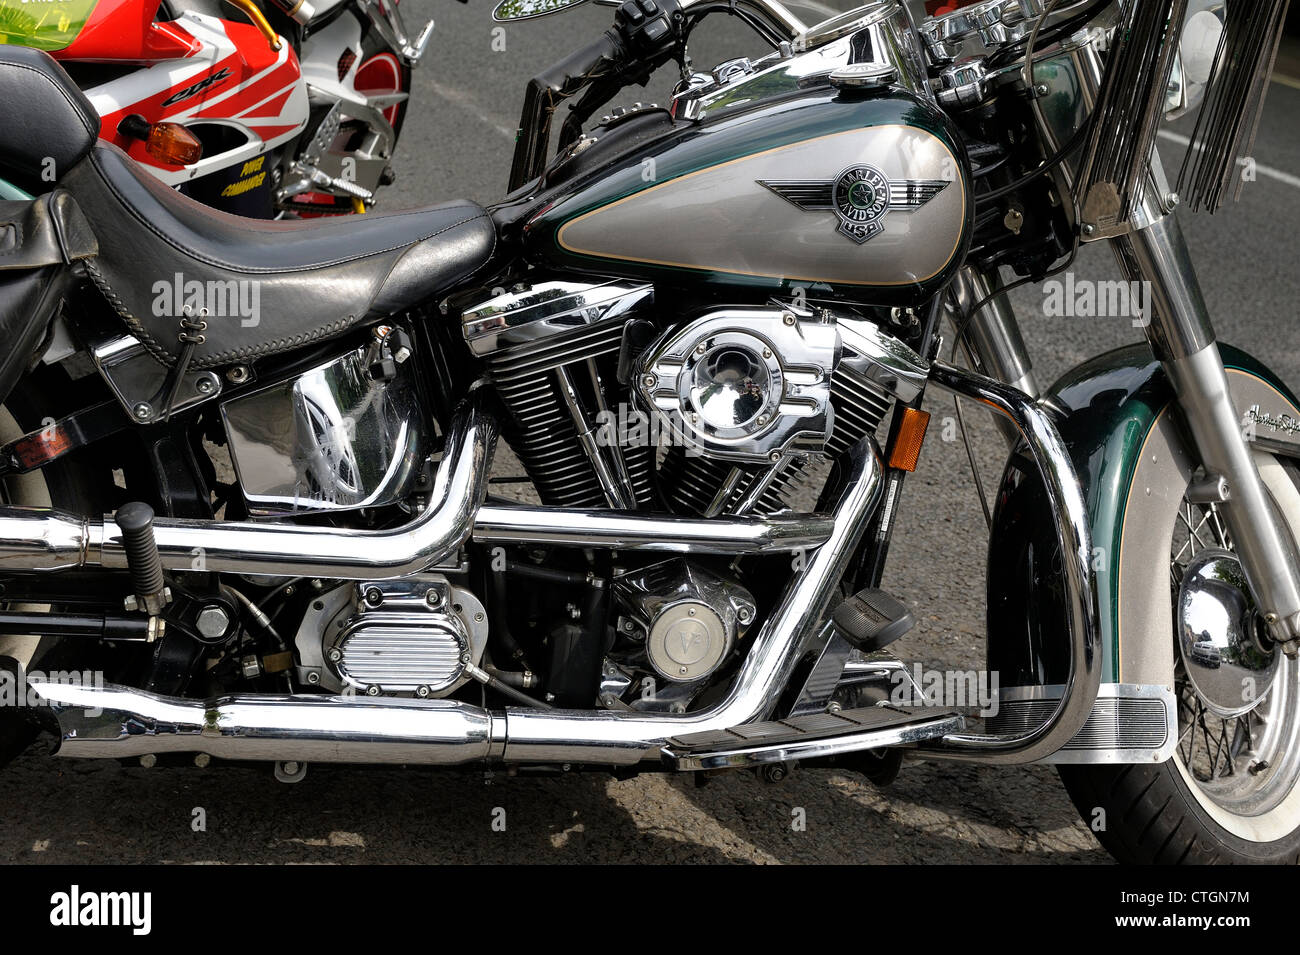 Harley Davidson v2 engine motorbike england uk Stock Photo - Alamy